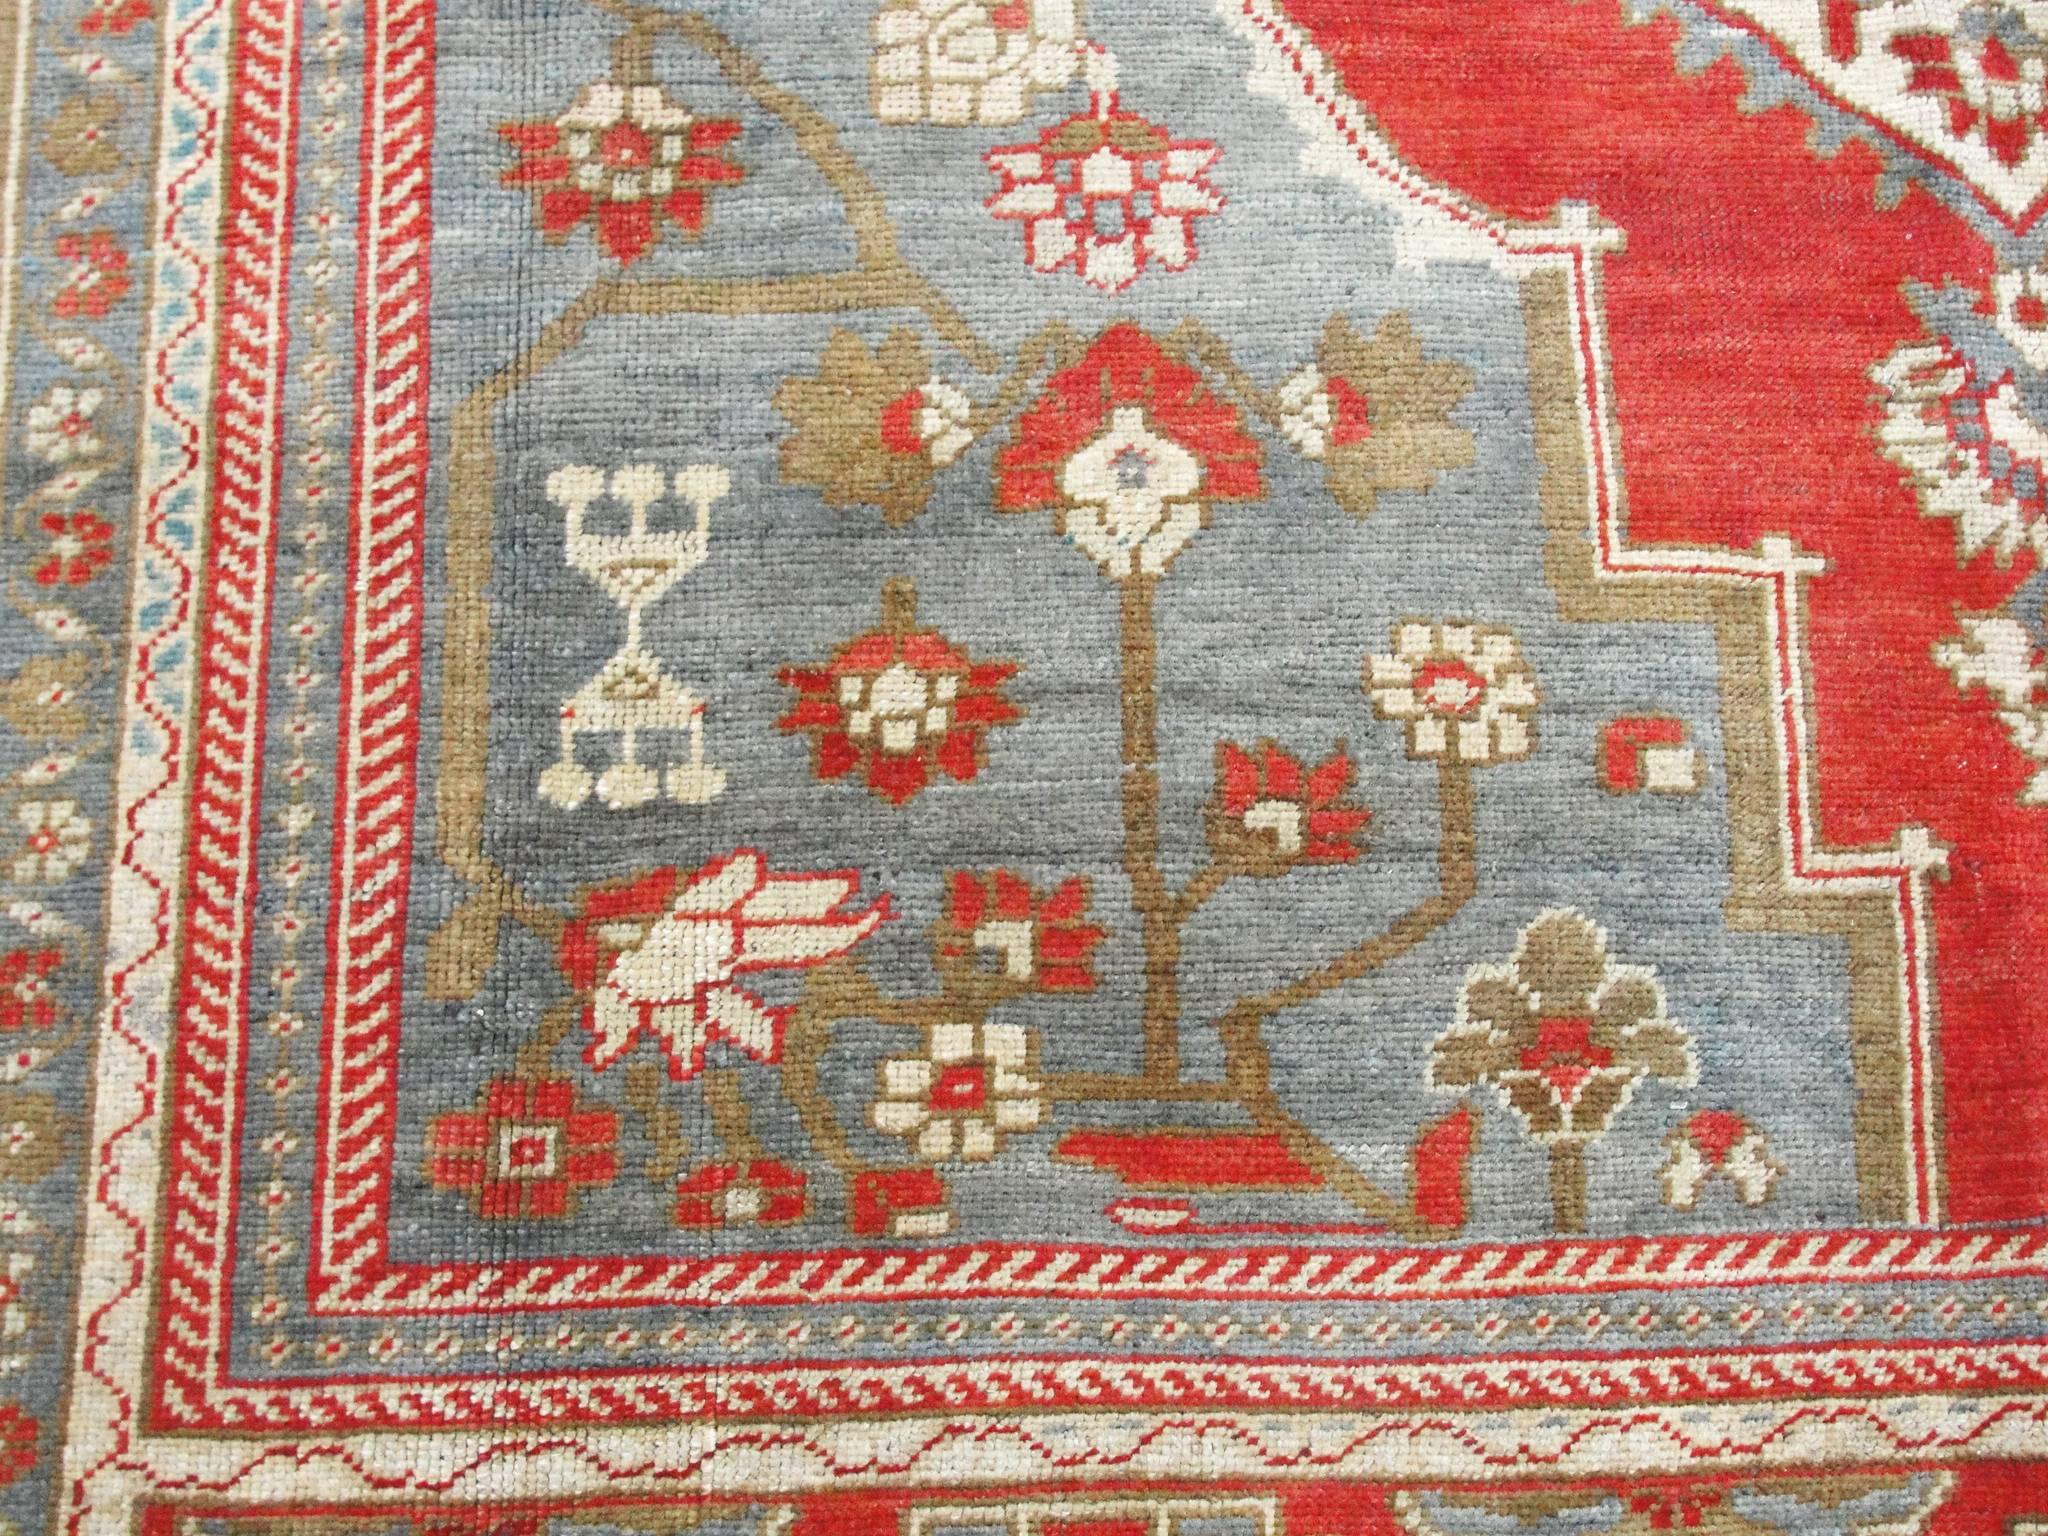 Hand-Woven Oushak Carpet